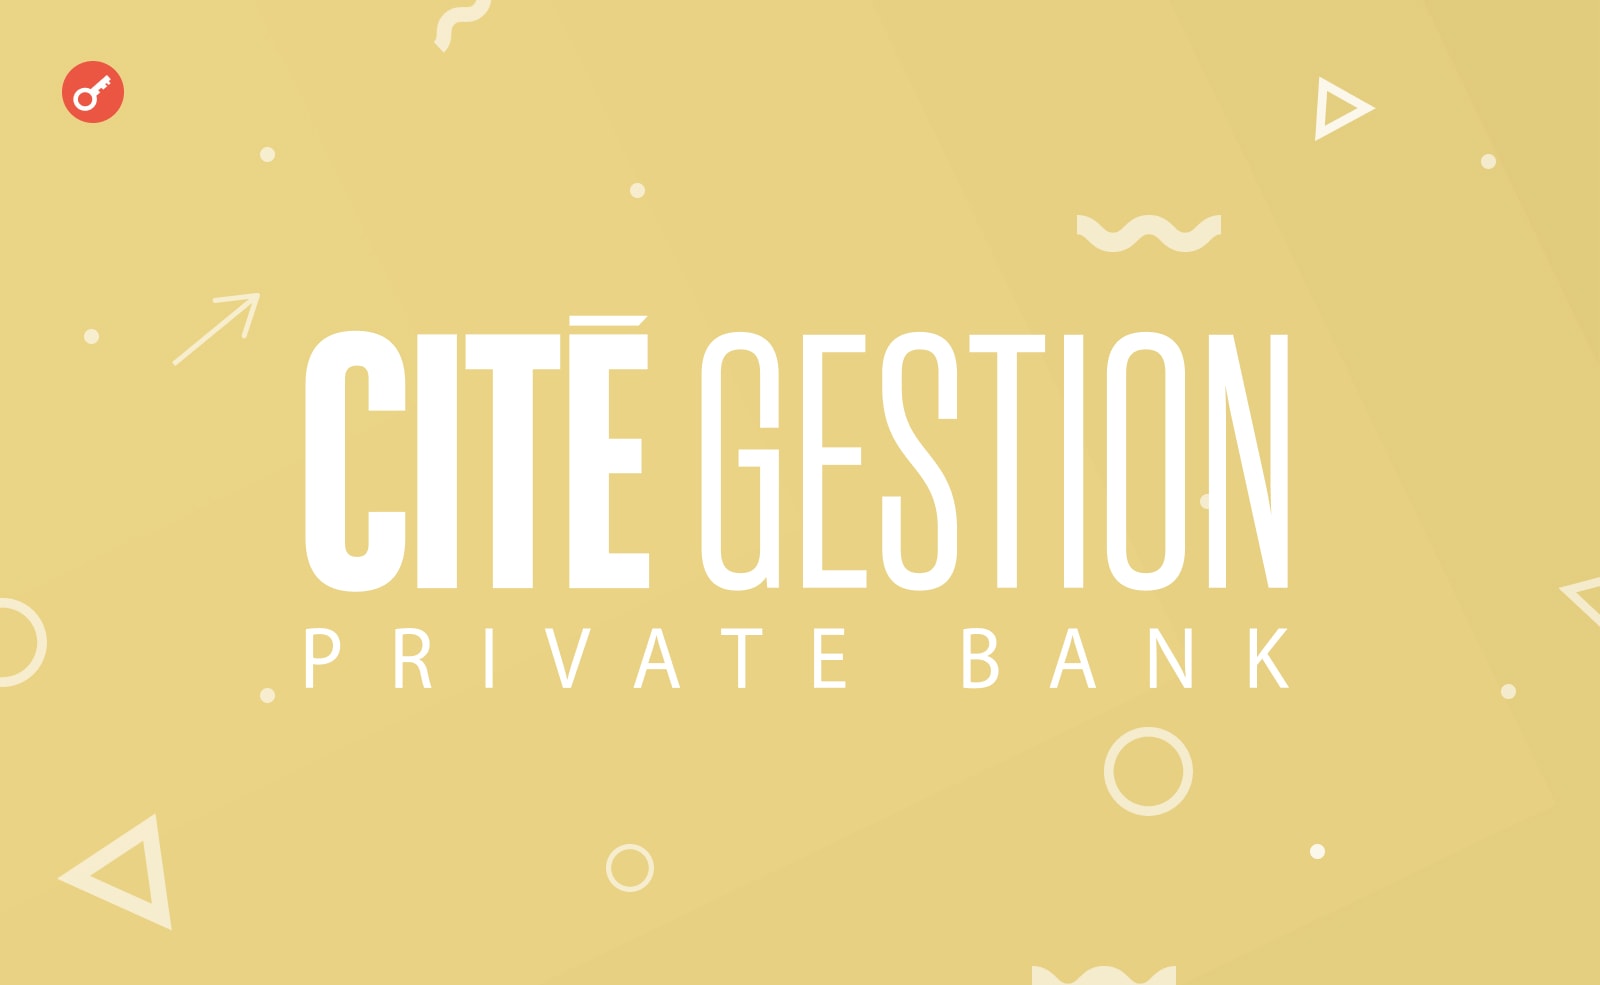 Швейцарский банк Cité Gestion токенизировал собственные акции. Заглавный коллаж новости.